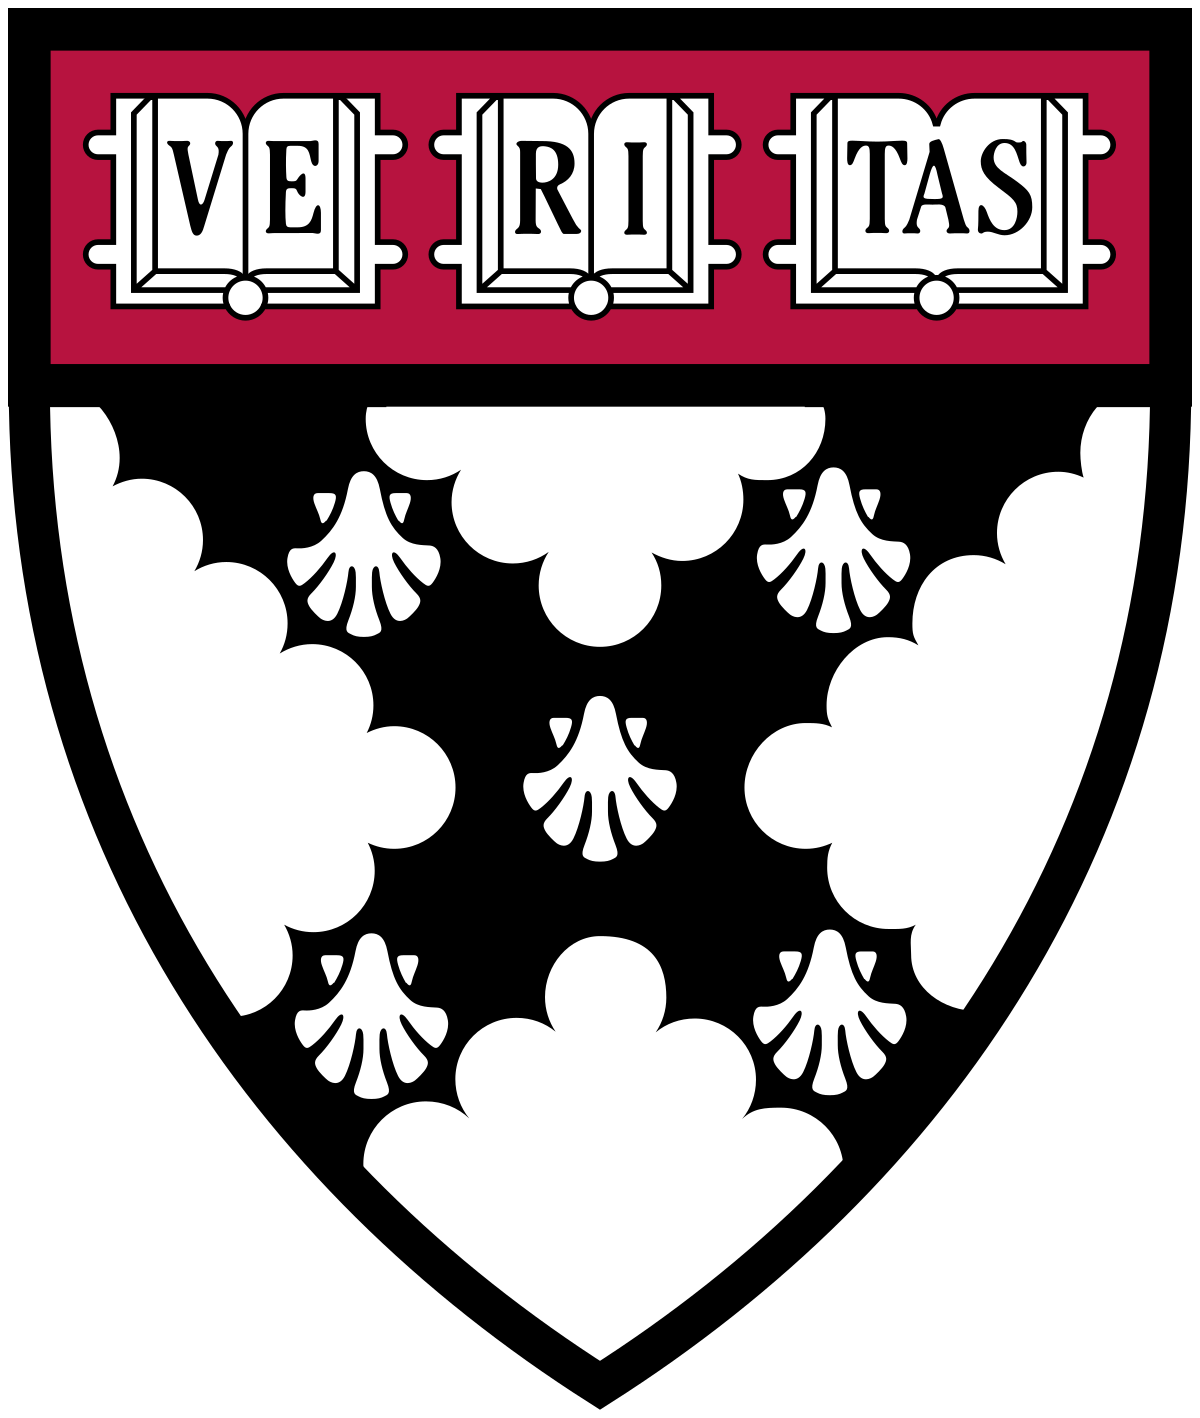 Top Harvard Business School Online Courses [2023]